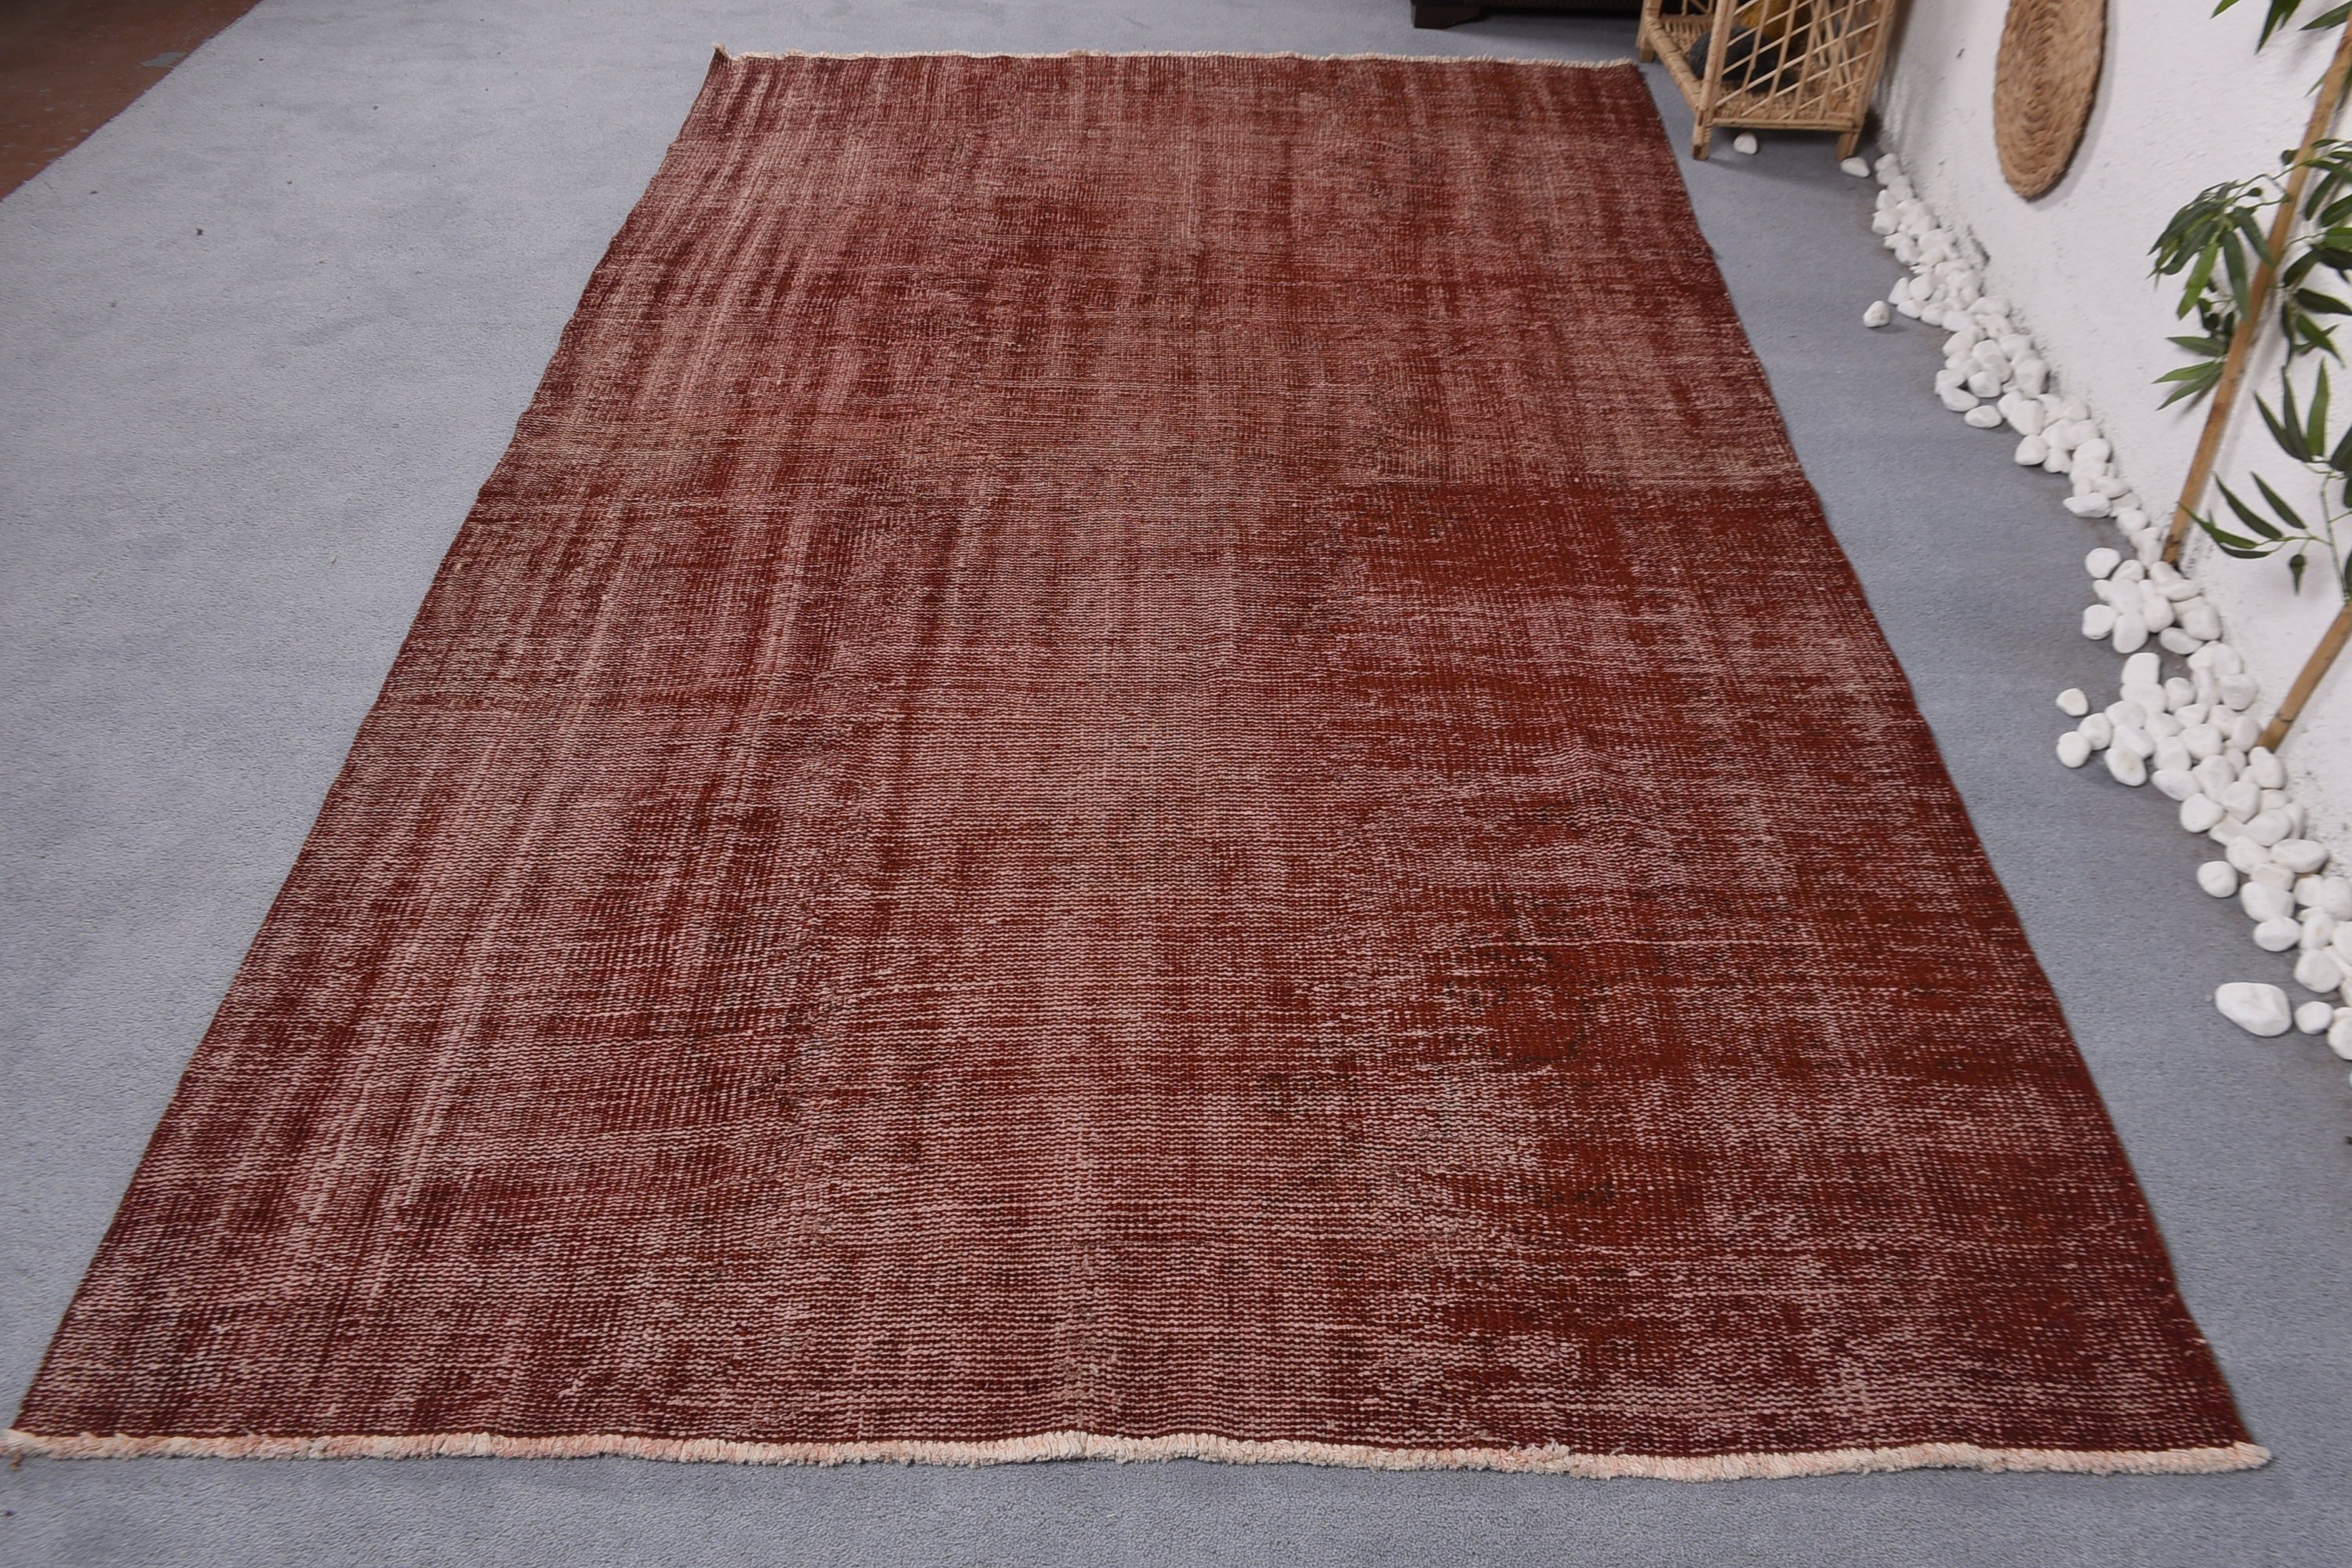 Turkish Rugs, Bedroom Rug, Vintage Rugs, Floor Rugs, Dining Room Rugs, Pale Rugs, Living Room Rug, 5.6x9.2 ft Large Rug, Red Oushak Rugs